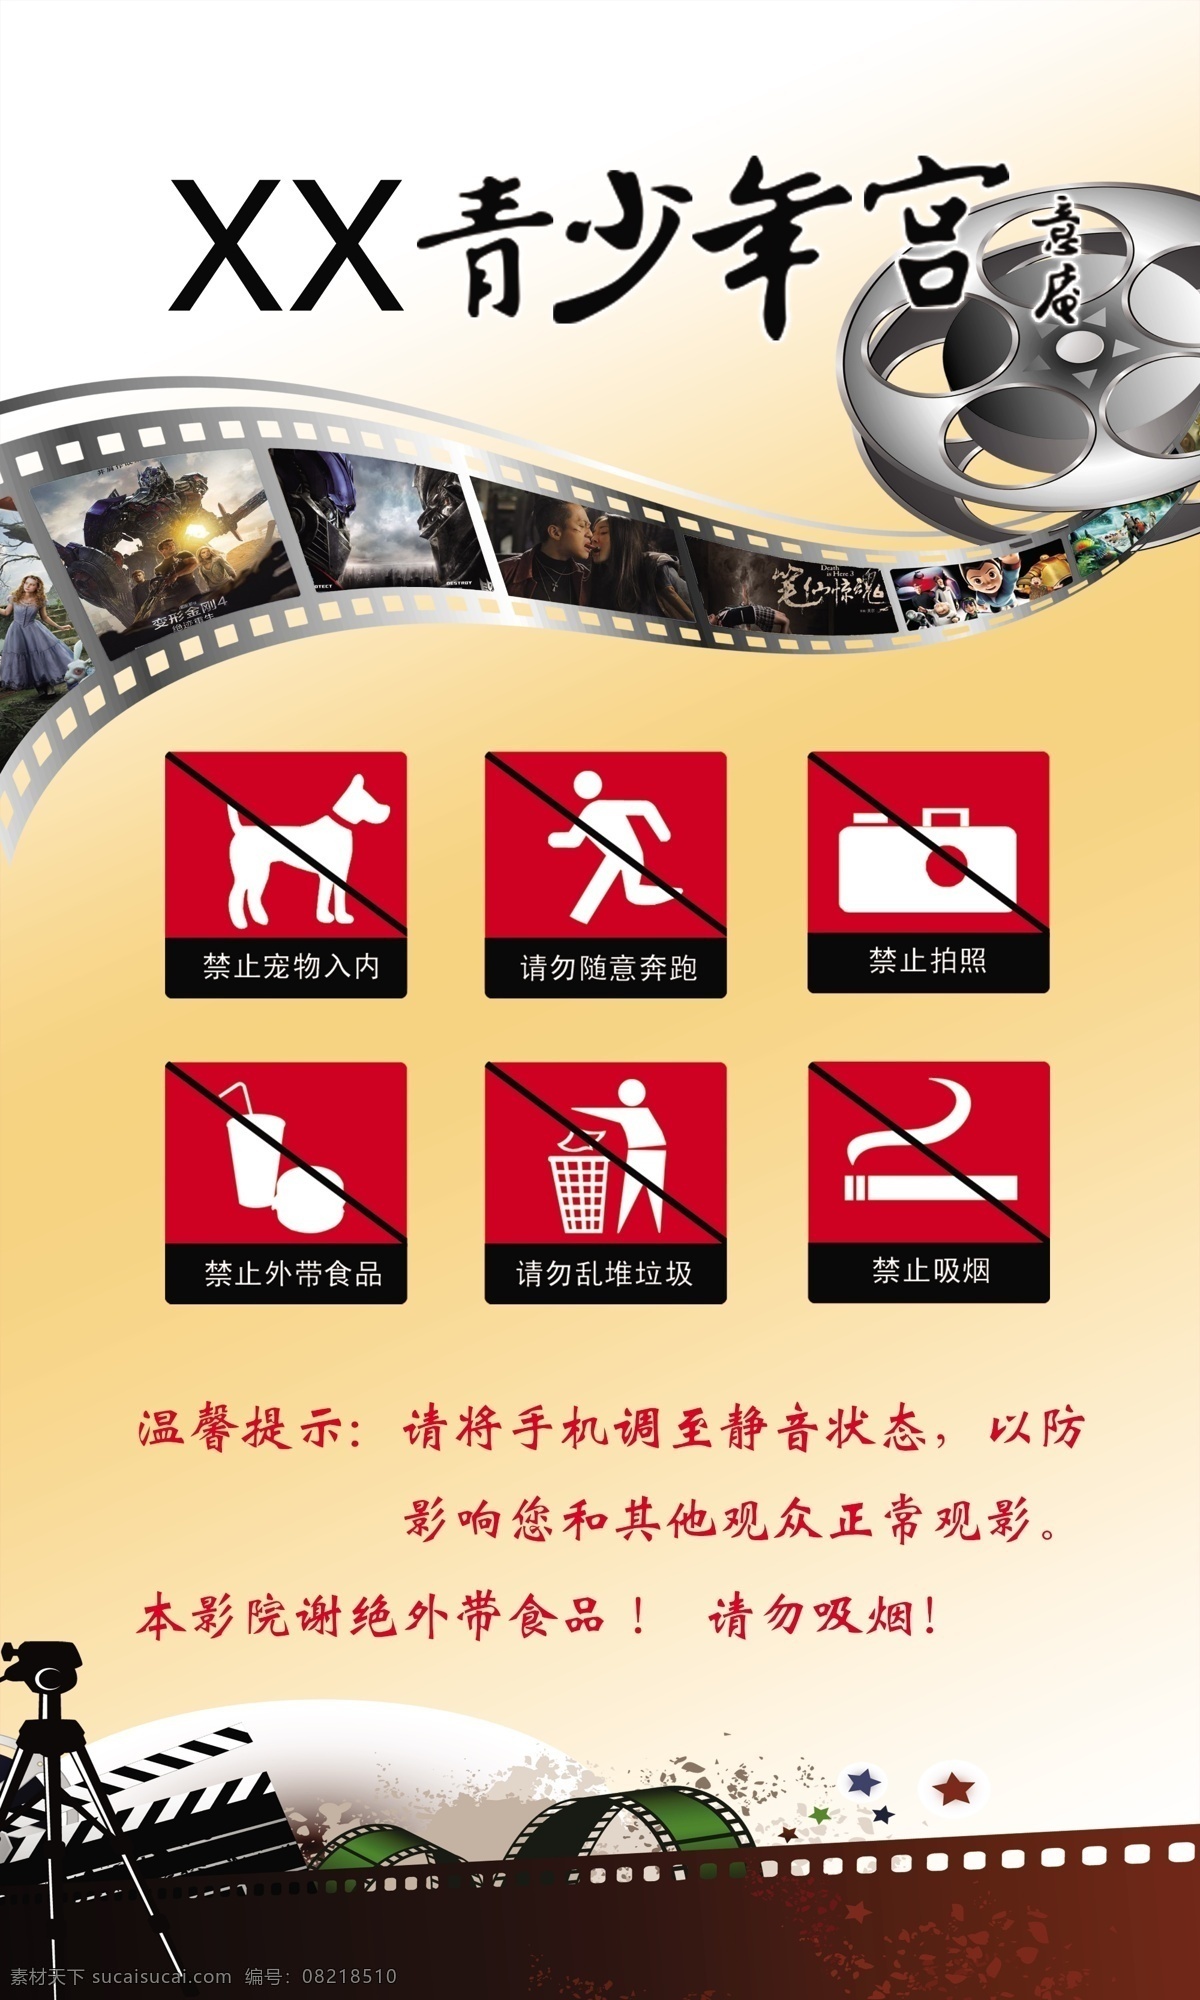 电影院 温馨 提示 少年宫 温馨提示 电影胶带 胶片 电影 政府国企 分层